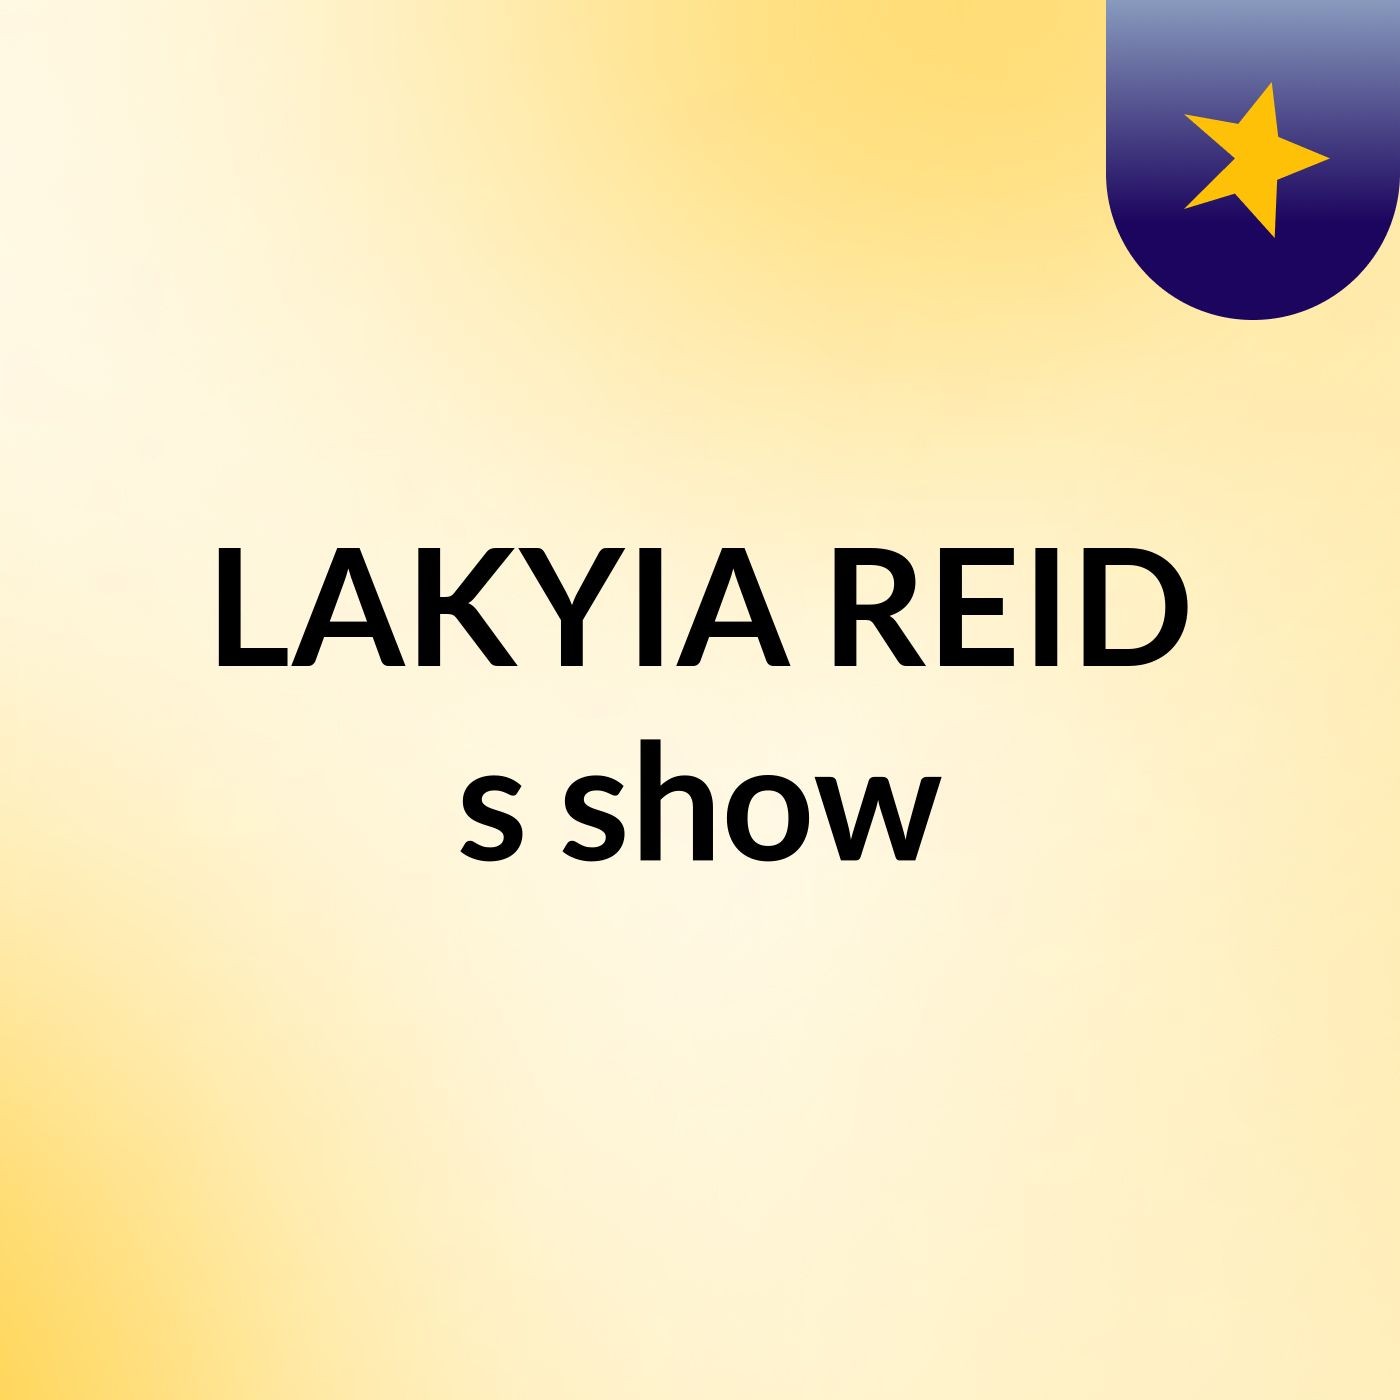 LAKYIA REID's show